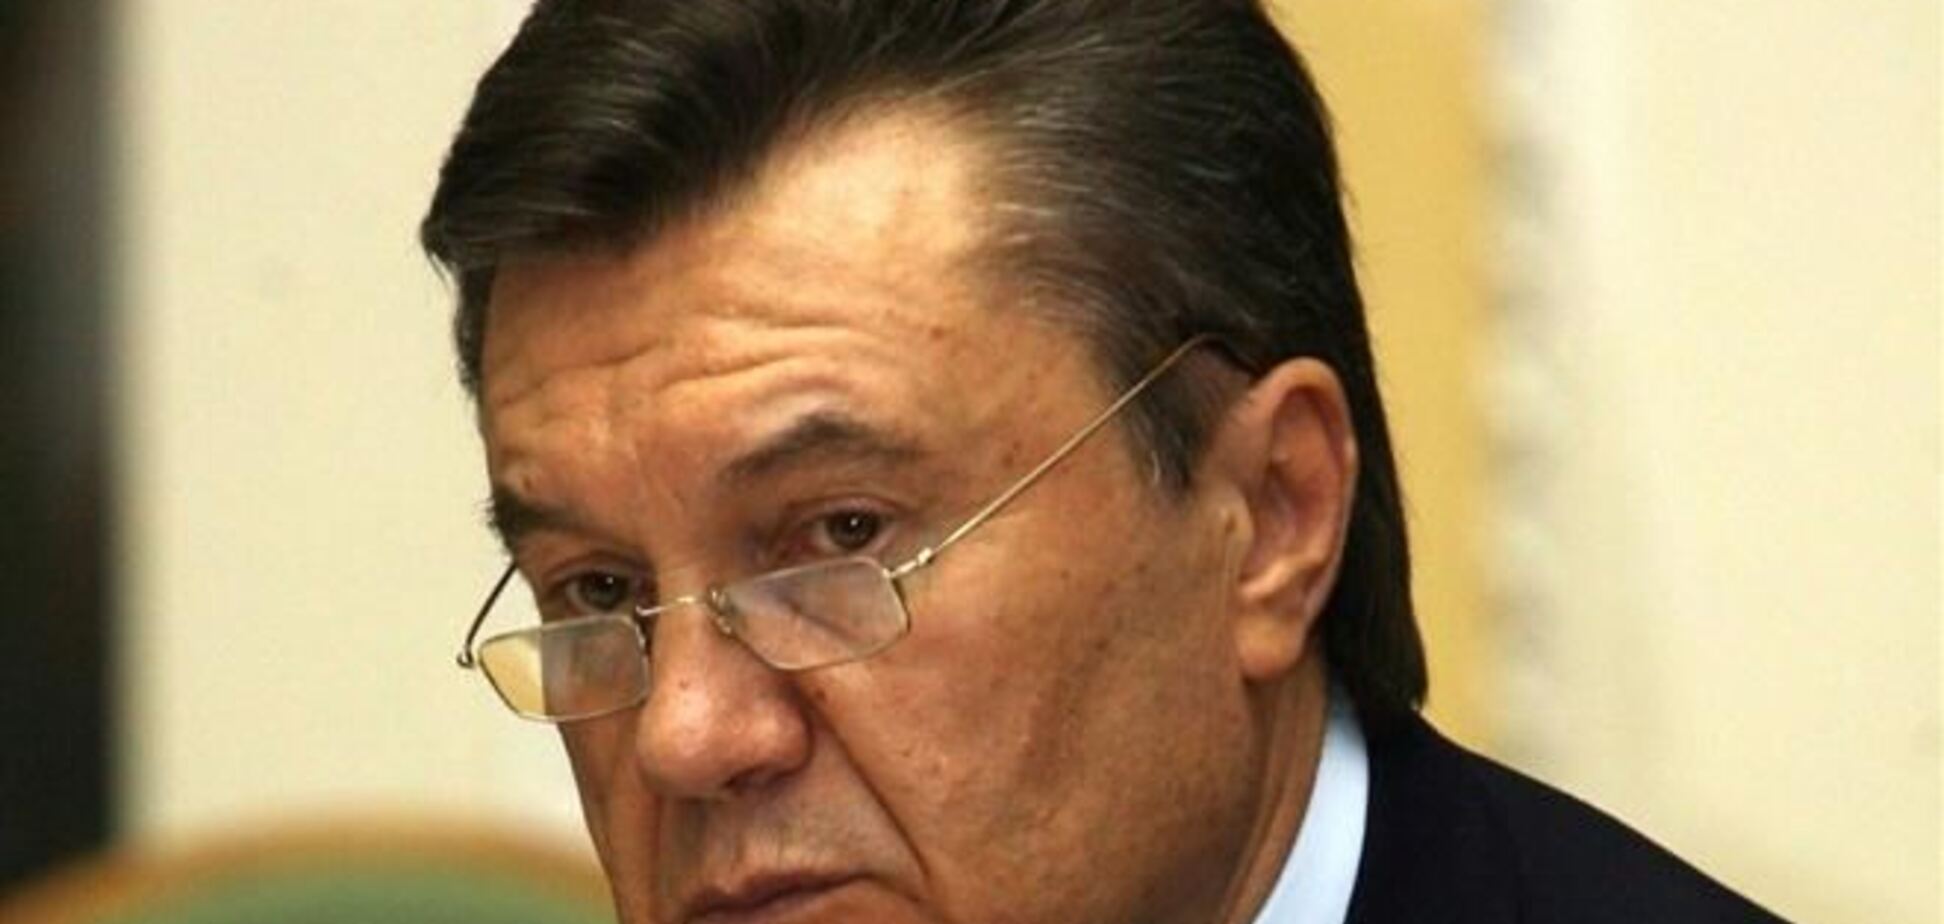 СМИ: Янукович может согласиться на досрочные выборы и новую конституцию